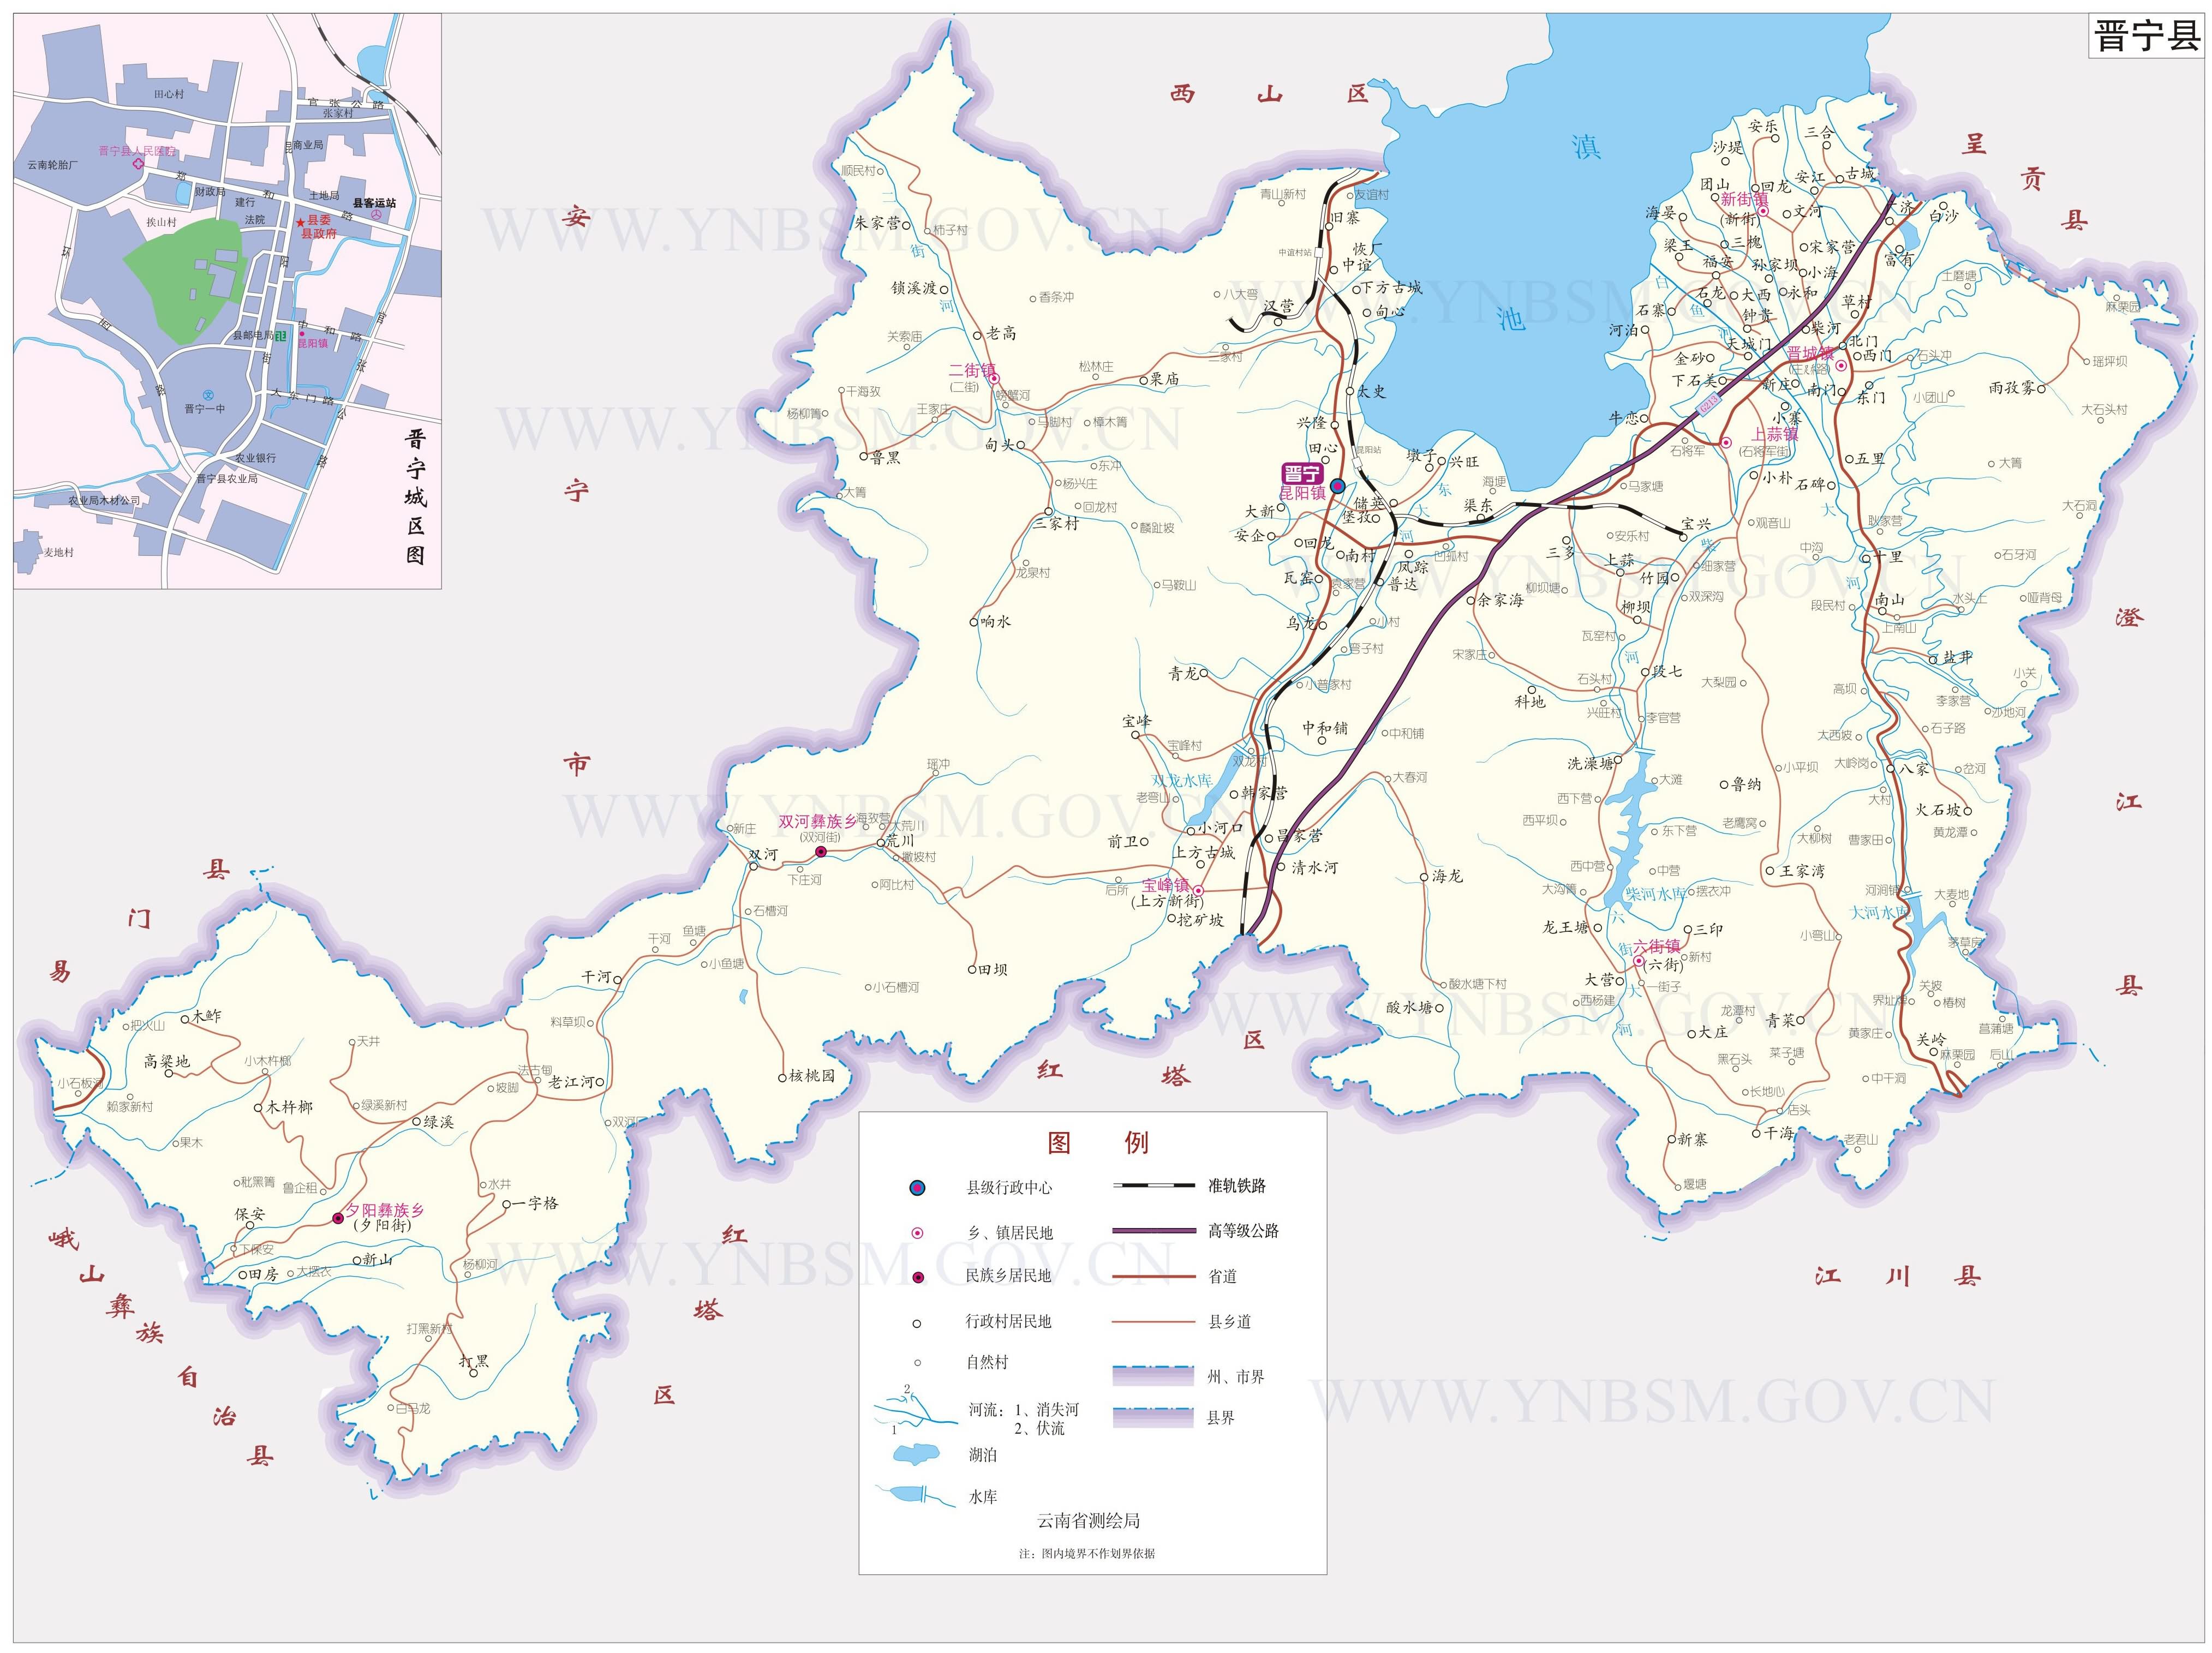 中国地图 云南 昆明市 >> 晋宁县地图  分类: 昆明市  更新:2014-7-9图片